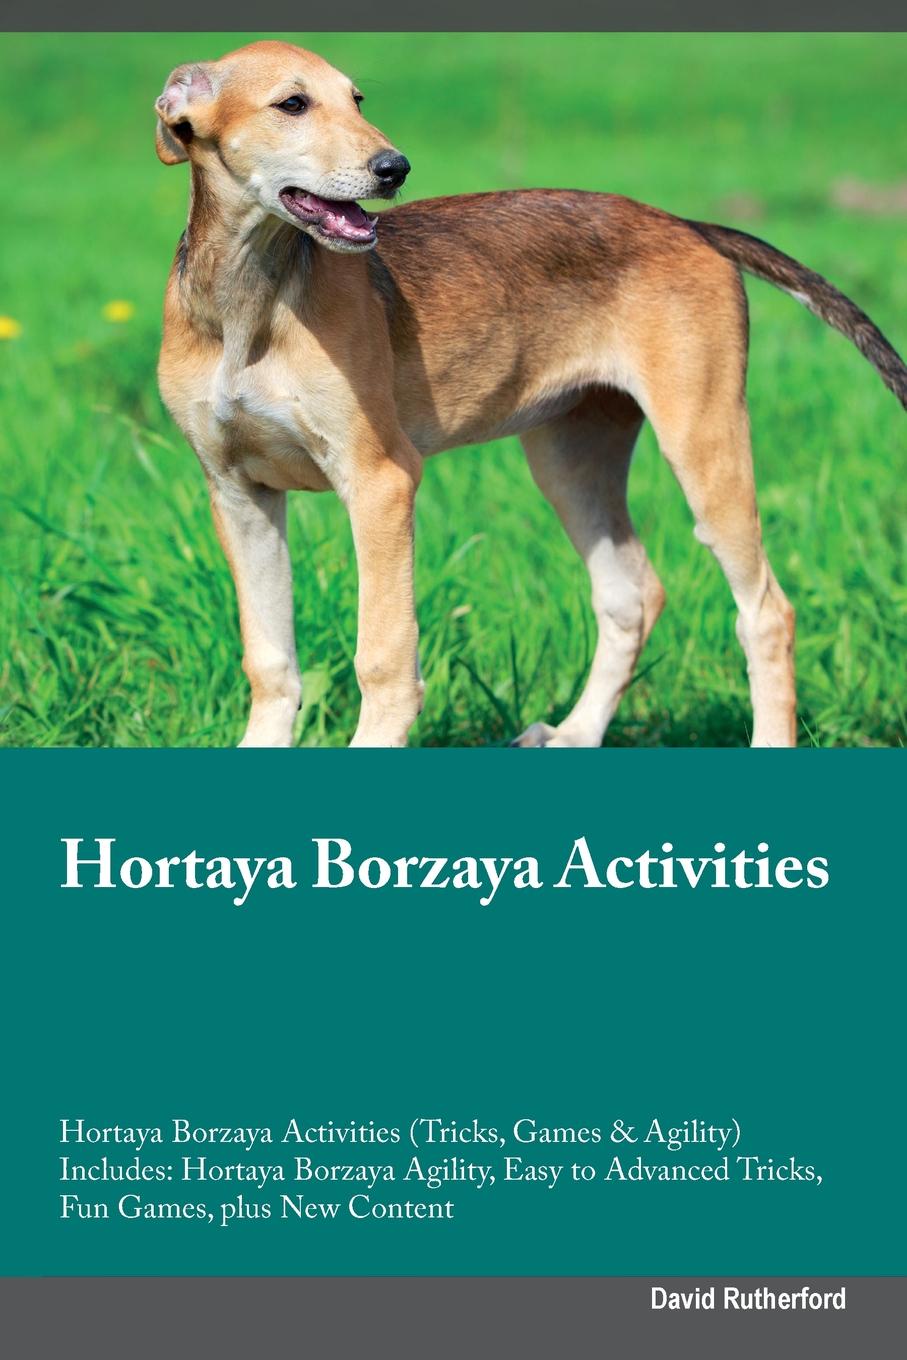 Hortaya Borzaya Activities Hortaya Borzaya Activities (Tricks, Games & Agility) Includes. Hortaya Borzaya Agility, Easy to Advanced Tricks, Fun Games, plus New Content